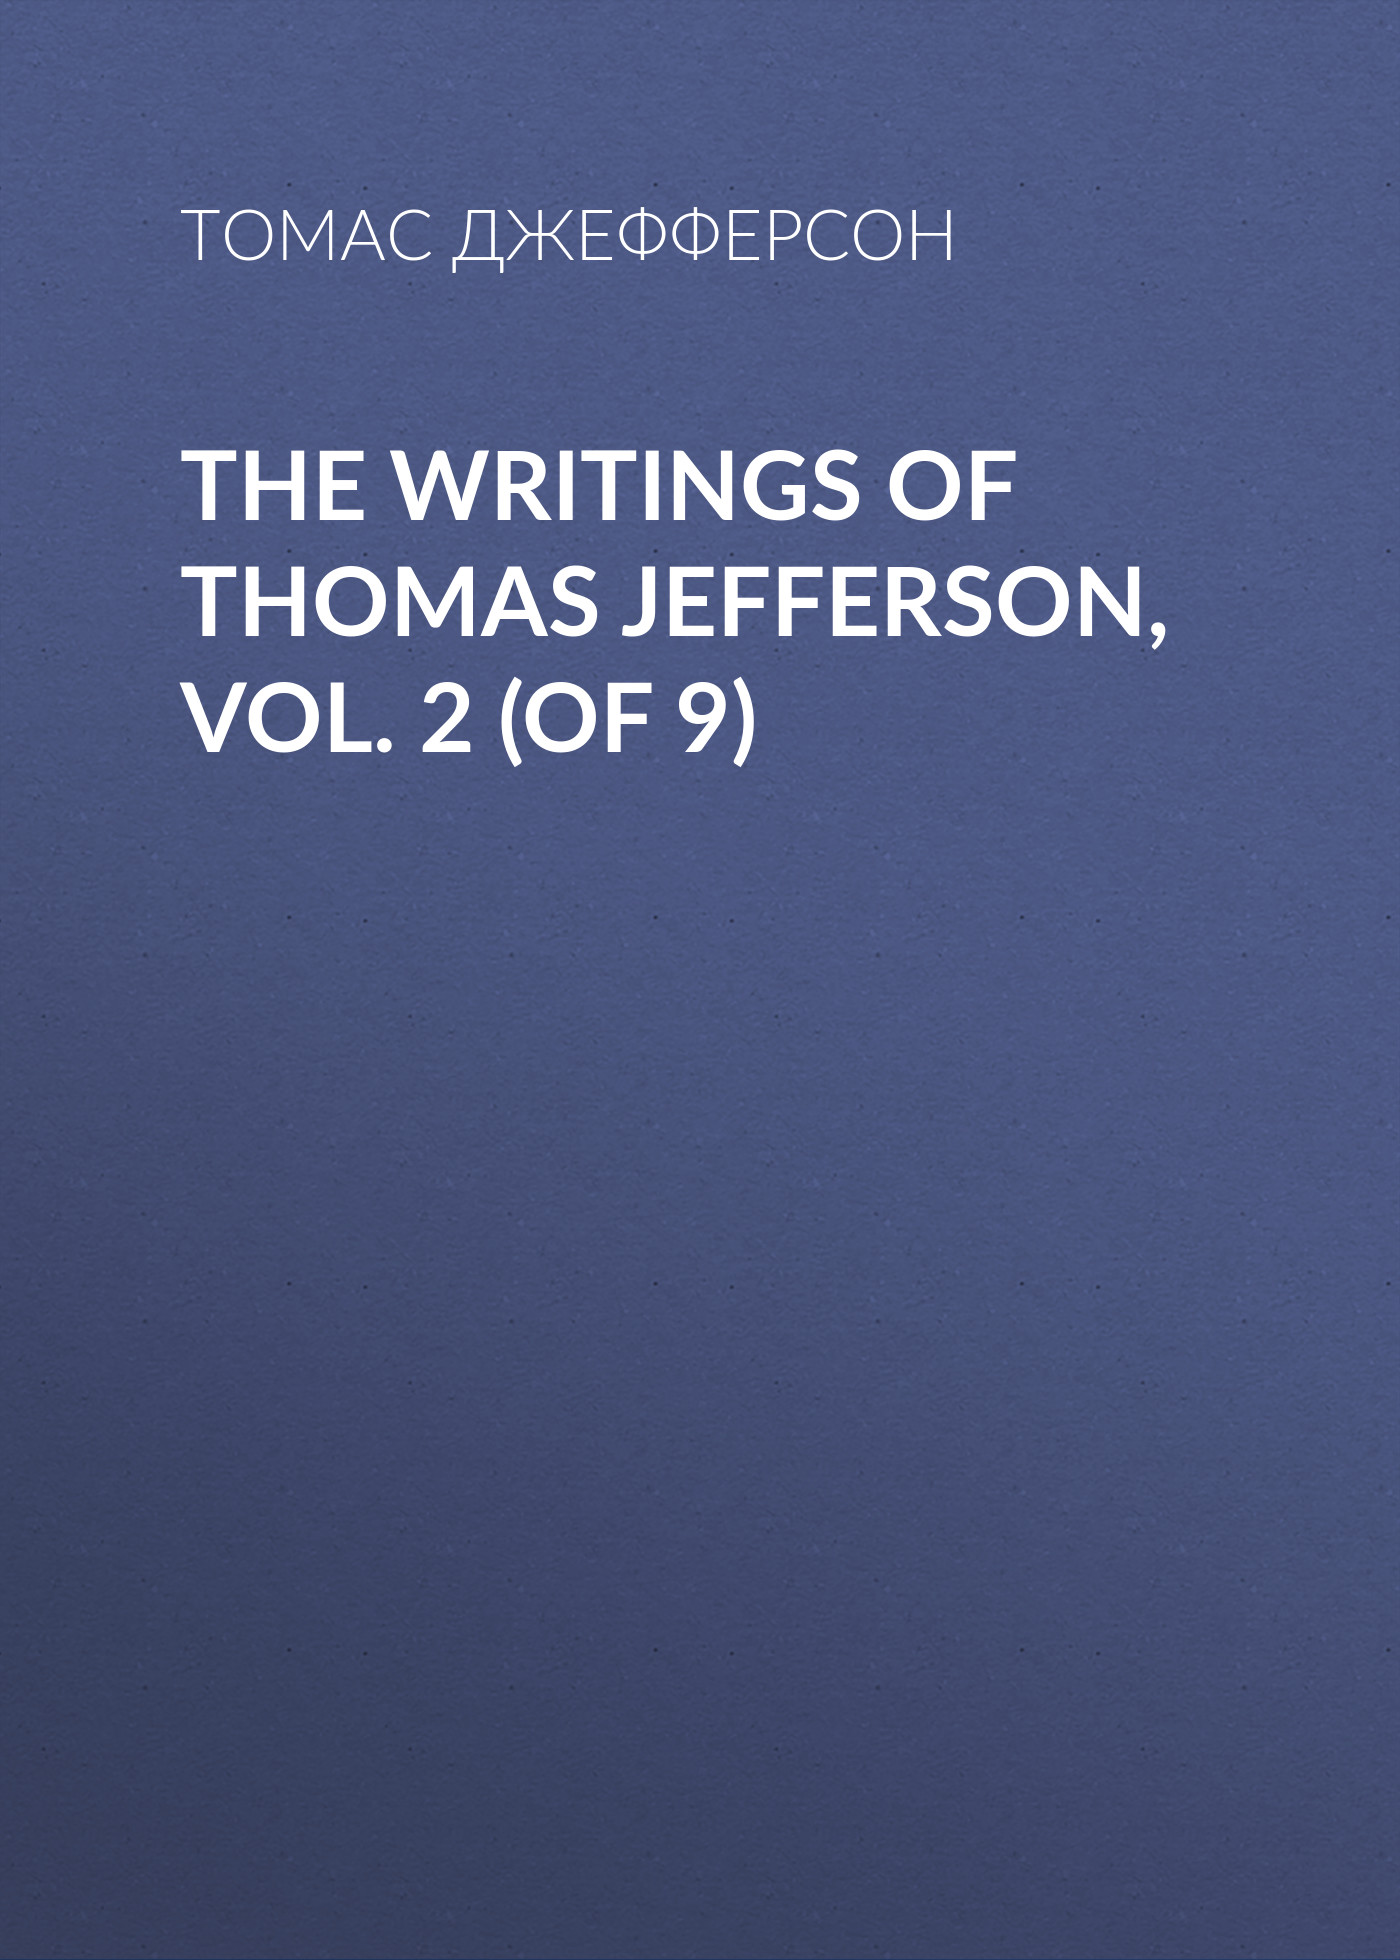 Книга The Writings of Thomas Jefferson, Vol. 2 (of 9) из серии , созданная Томас Джефферсон, может относится к жанру Биографии и Мемуары, Зарубежная старинная литература. Стоимость электронной книги The Writings of Thomas Jefferson, Vol. 2 (of 9) с идентификатором 34839230 составляет 0 руб.